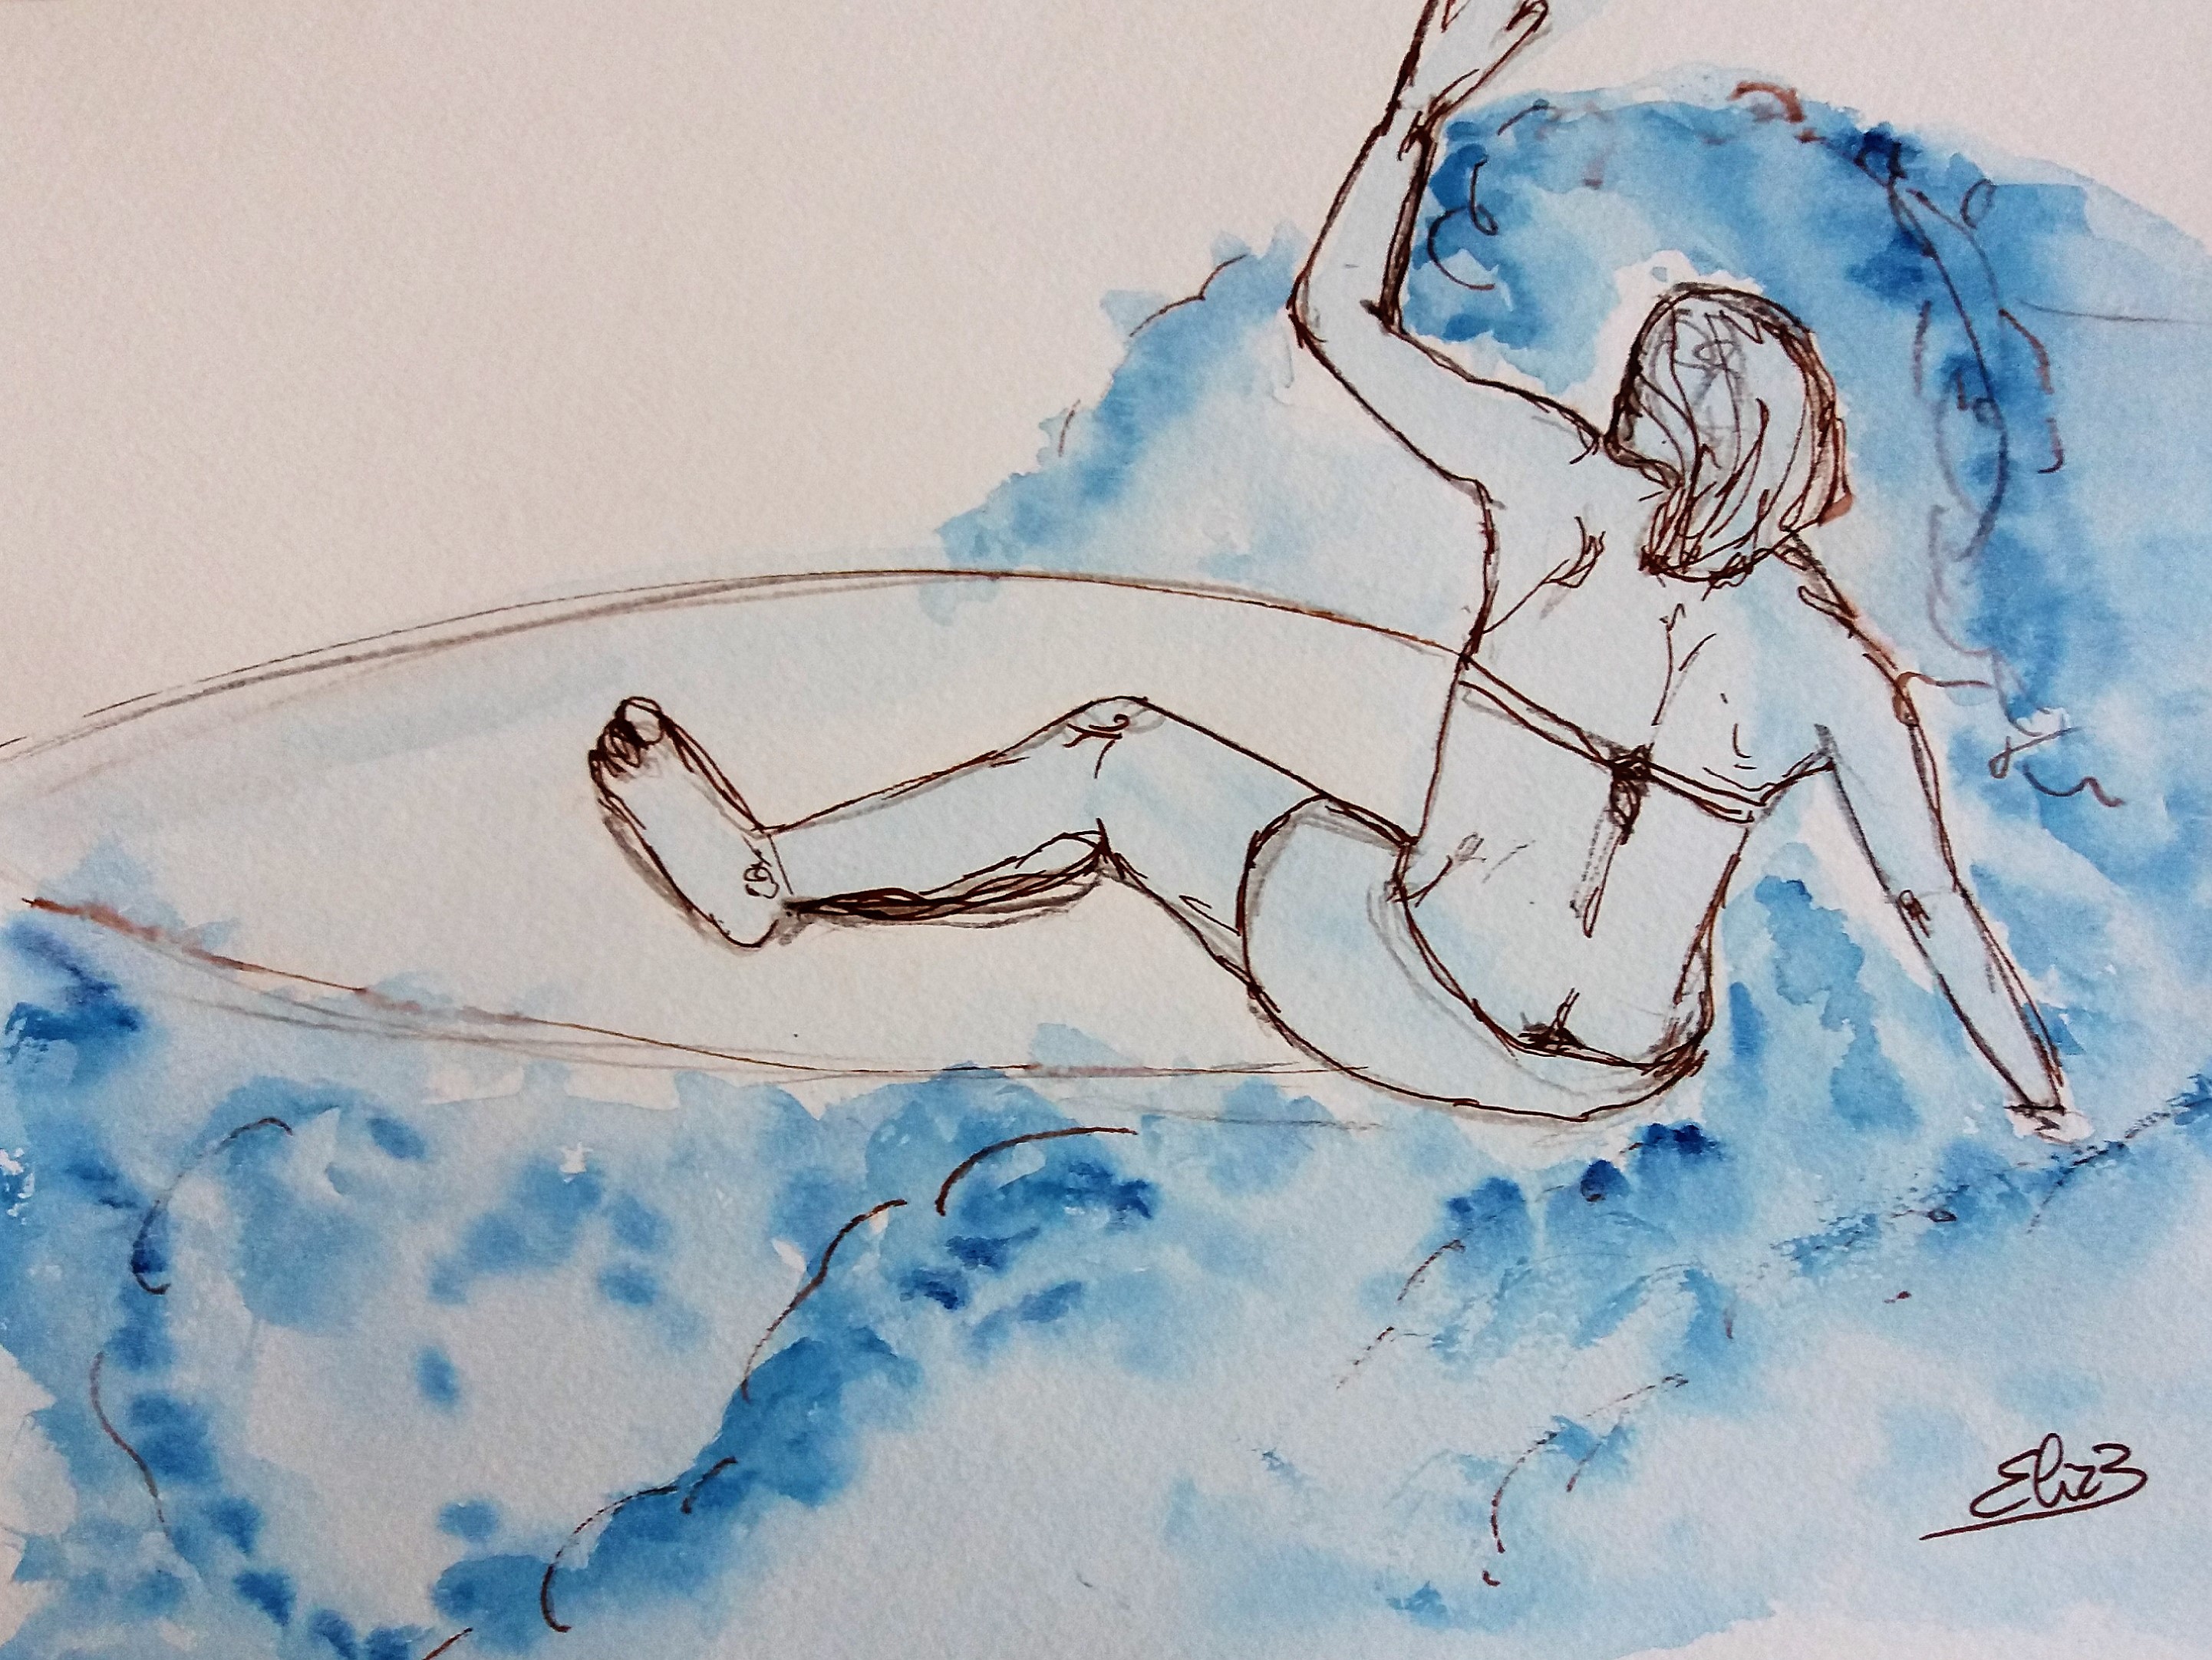 surfer sur la vague, surfeuse sur la plage, dessin esquisse par elize pour pigmentropie encre bleu et trait marron tomber rouleau